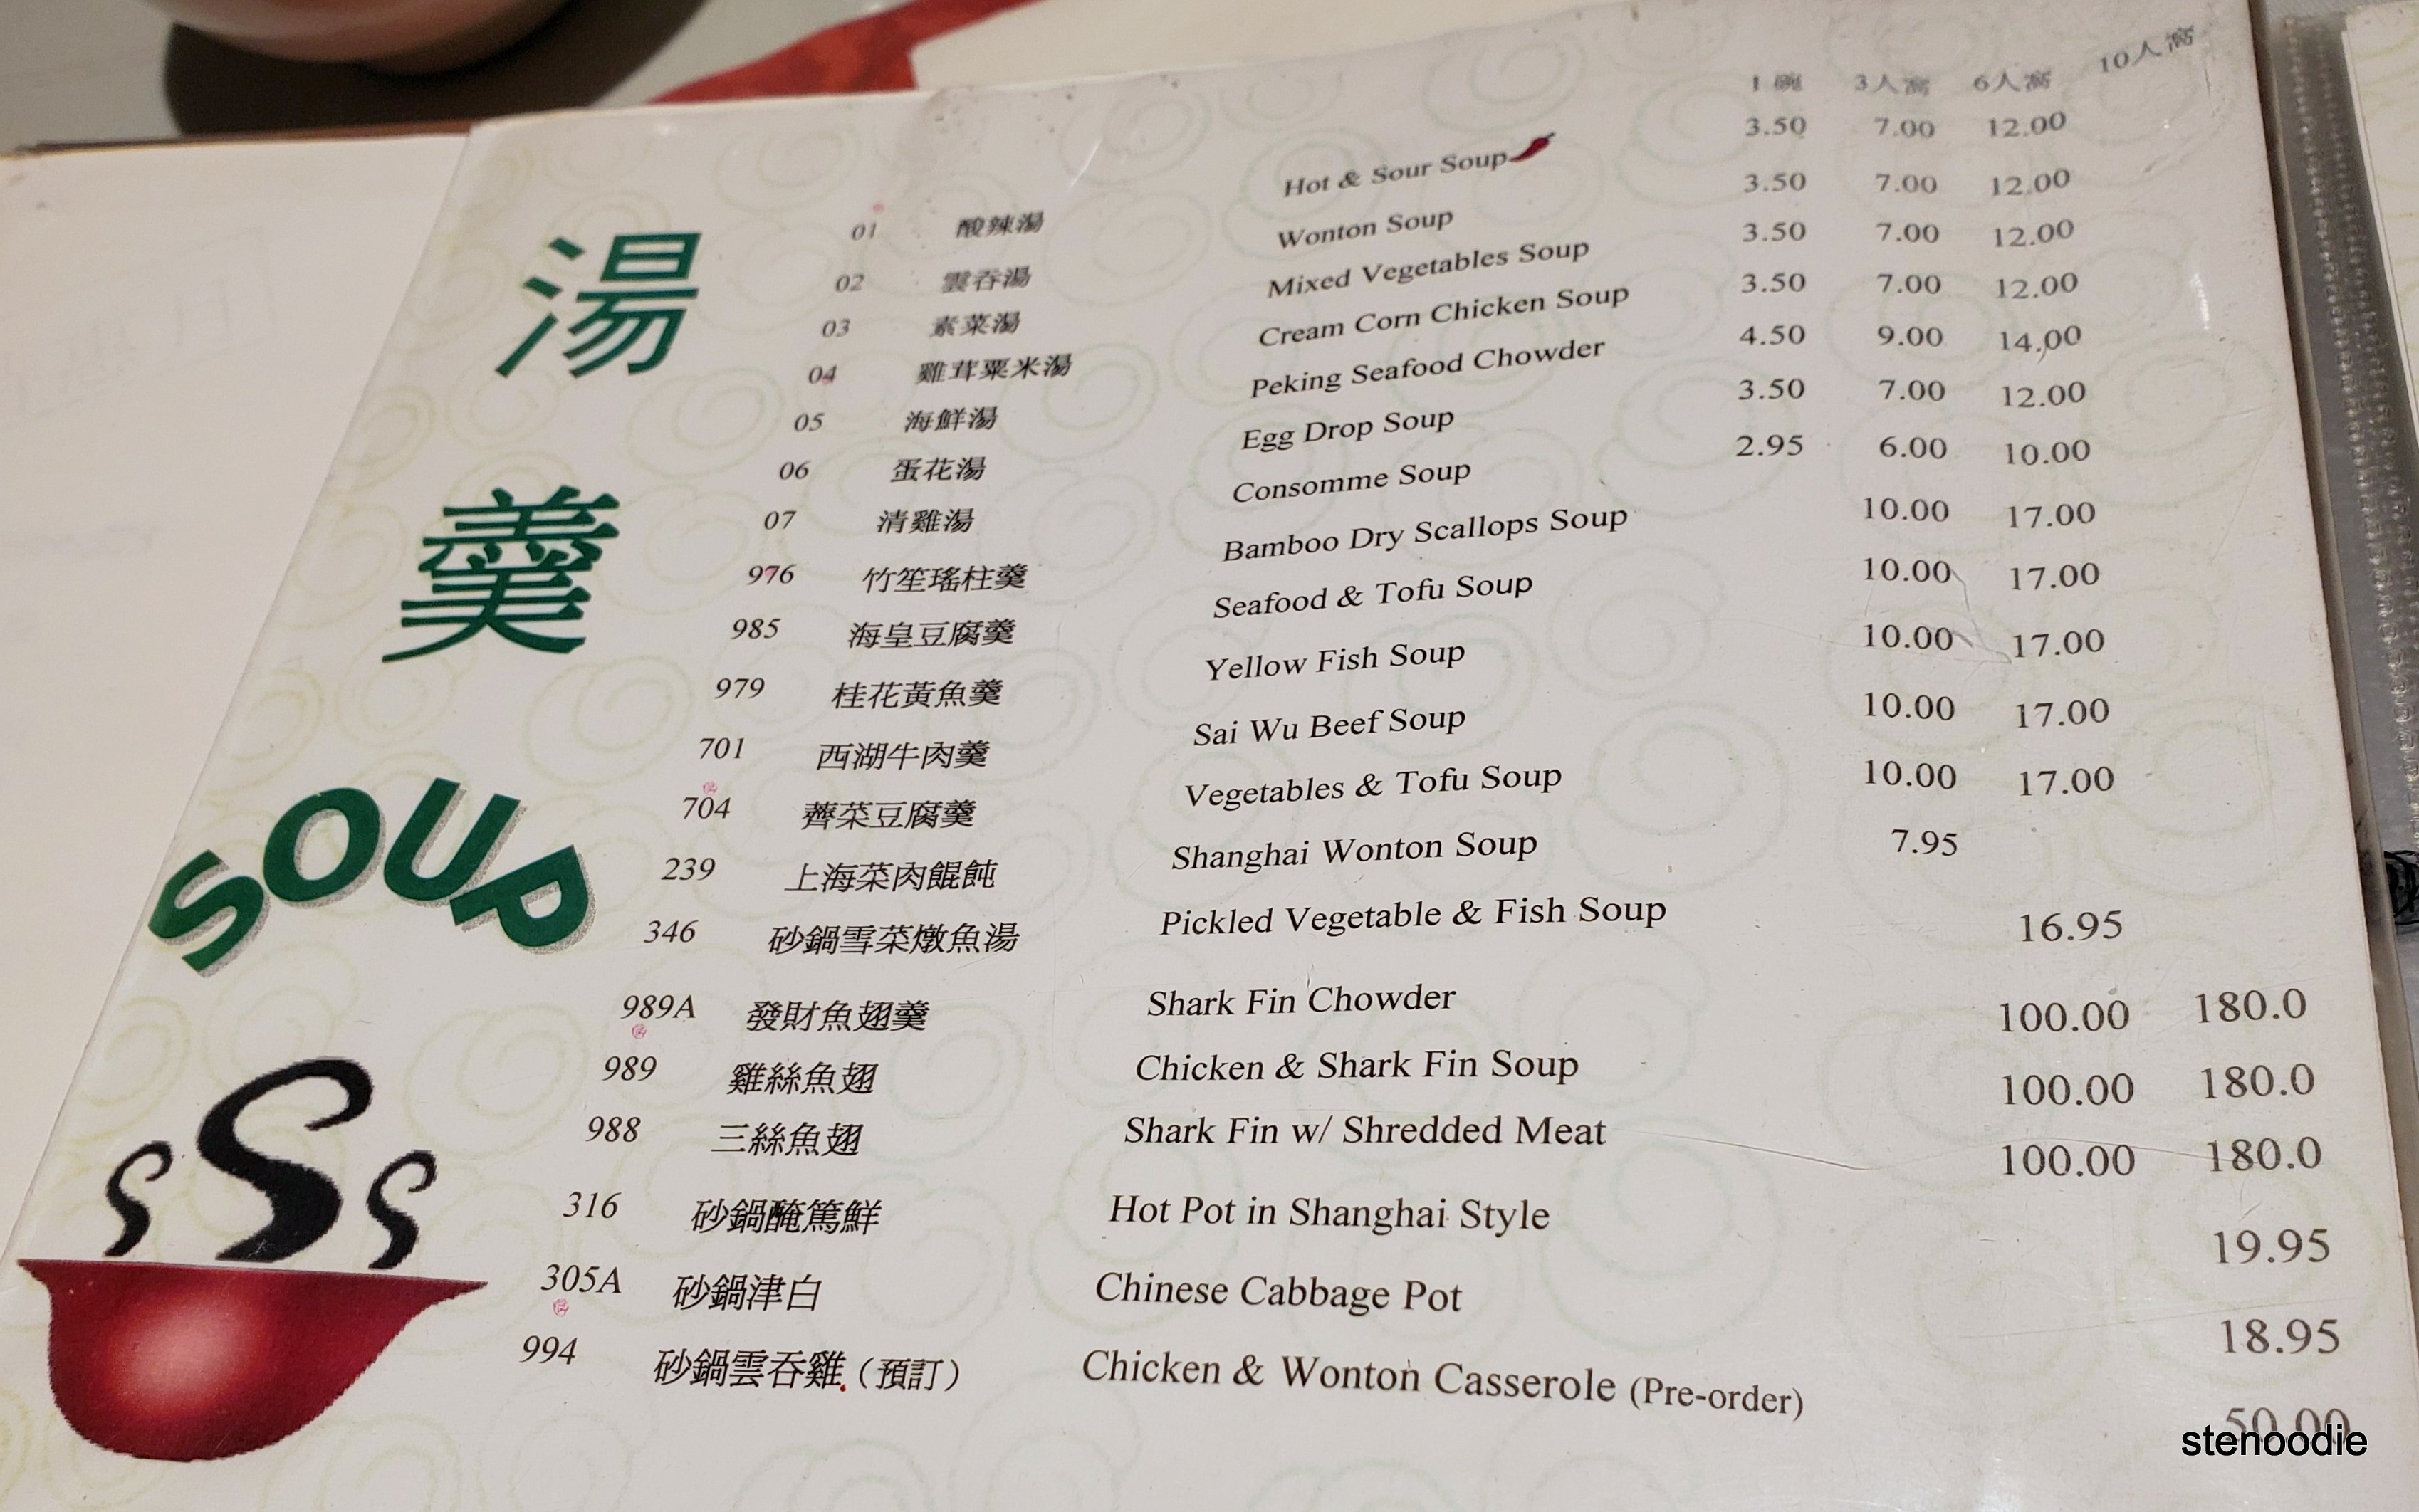  Peking Man Restaurant menu and prices